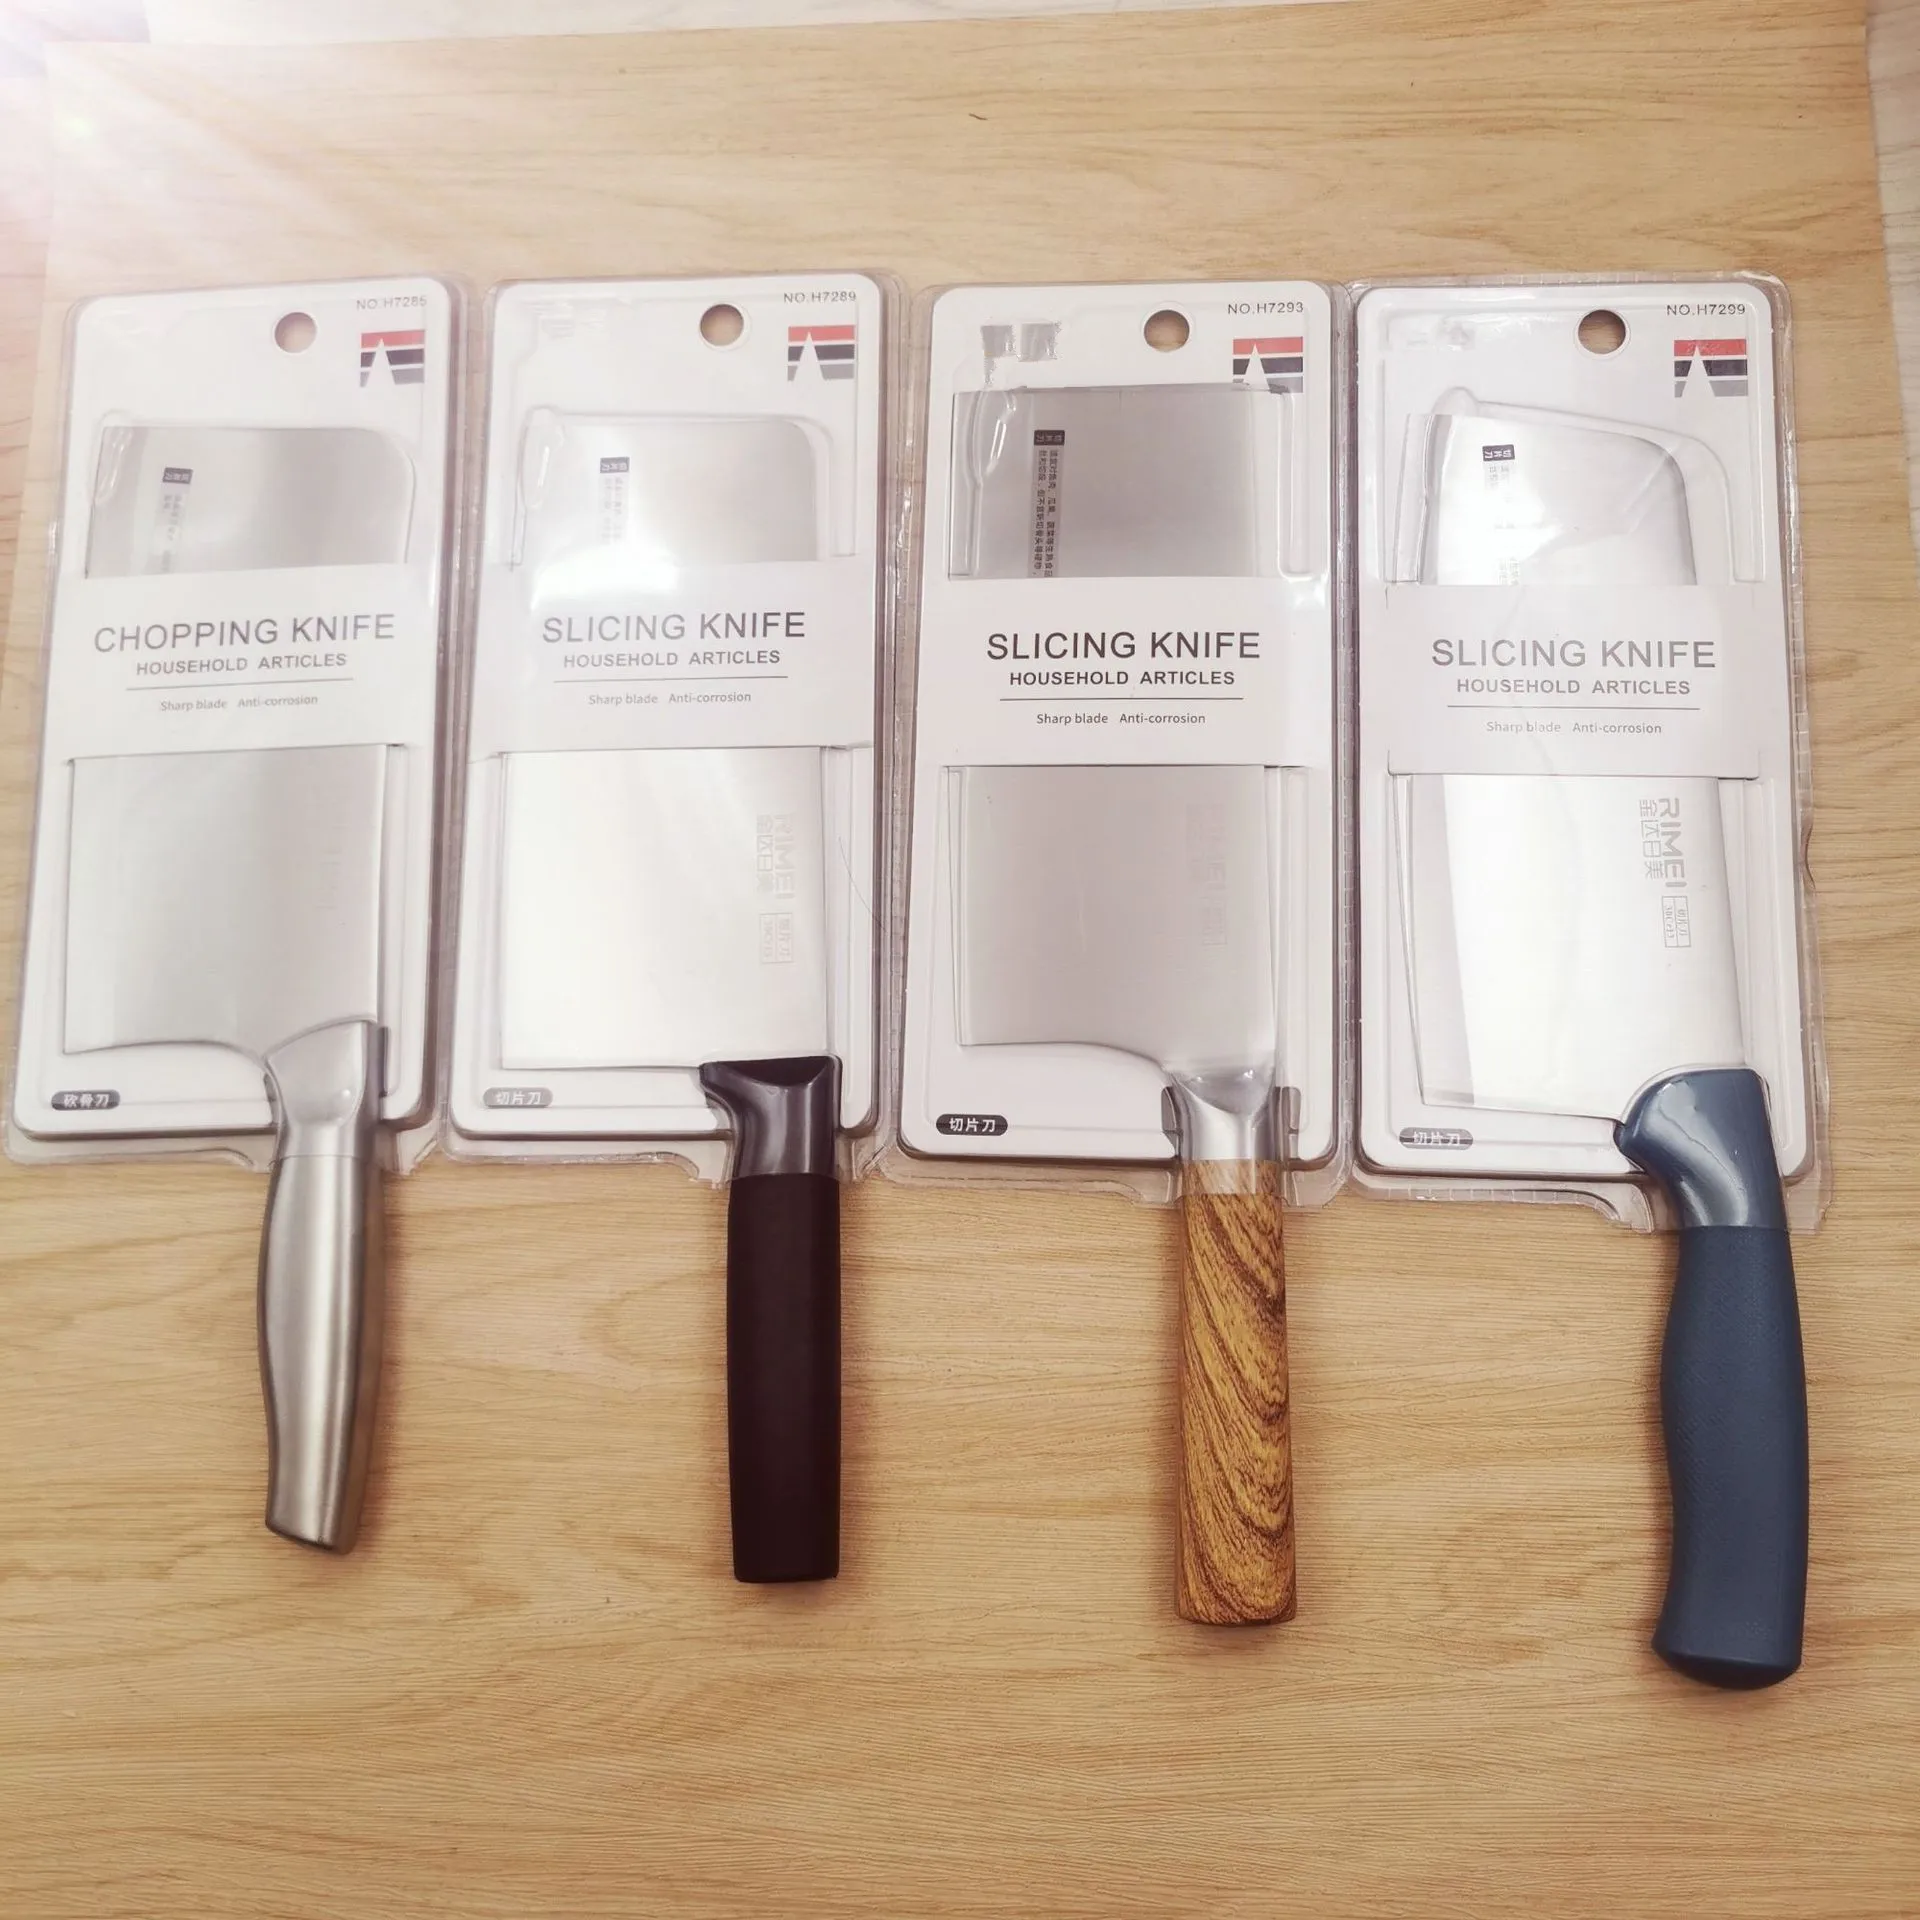 

Оптовая продажа, Кухонная техника NLM, кухонная утварь H7299, присоска, загруженные кухонные ножи из нержавеющей стали, нож для нарезки